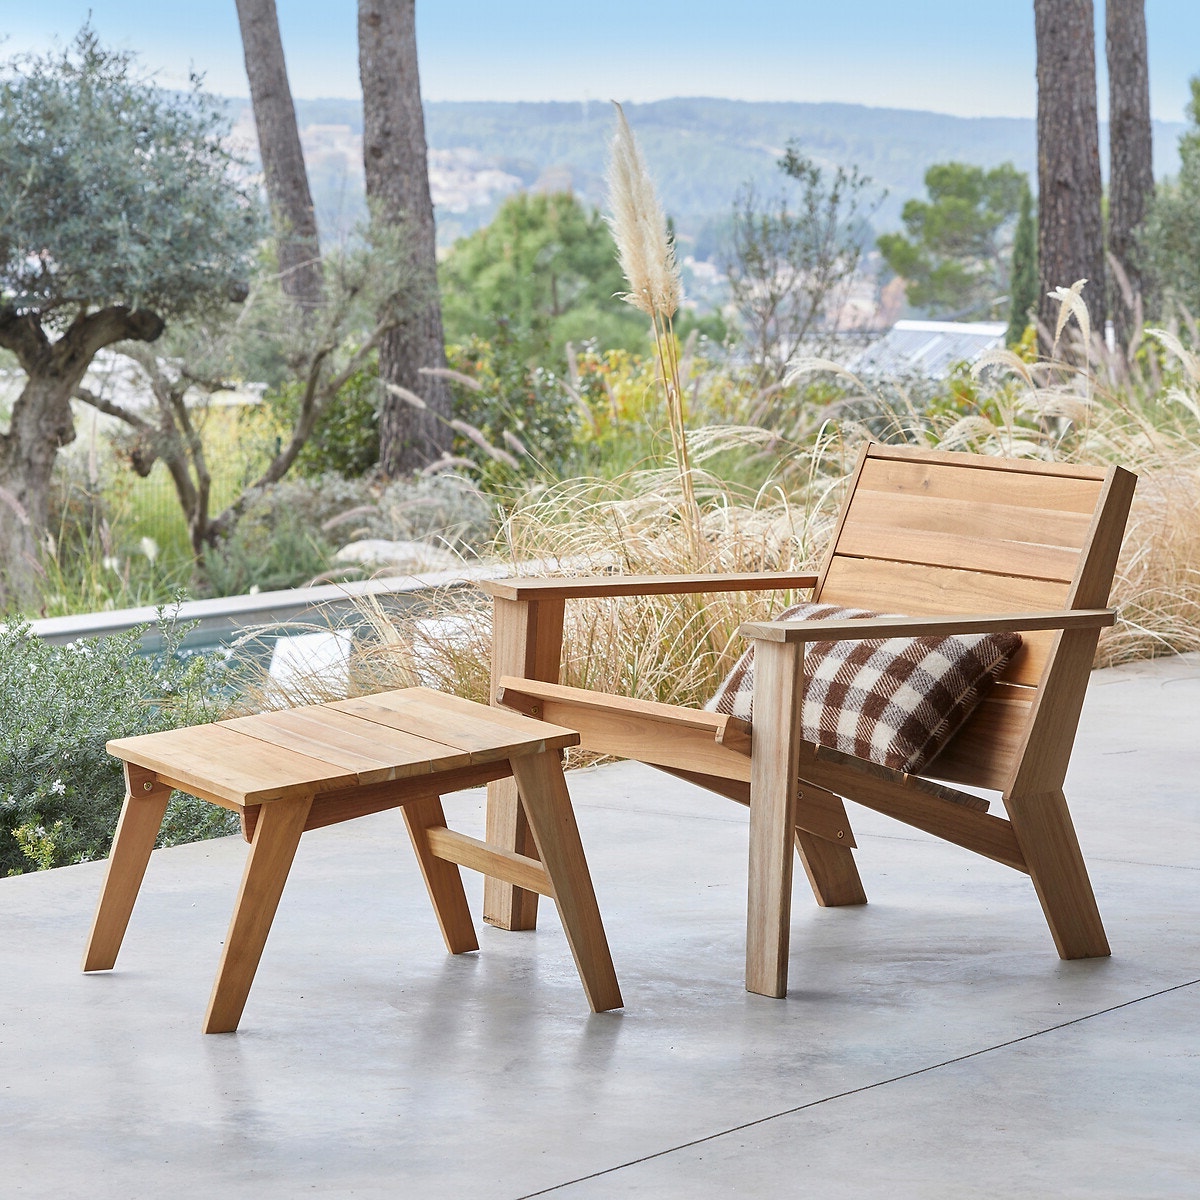 chaise longue en bois repose-pied minimaliste style japandi